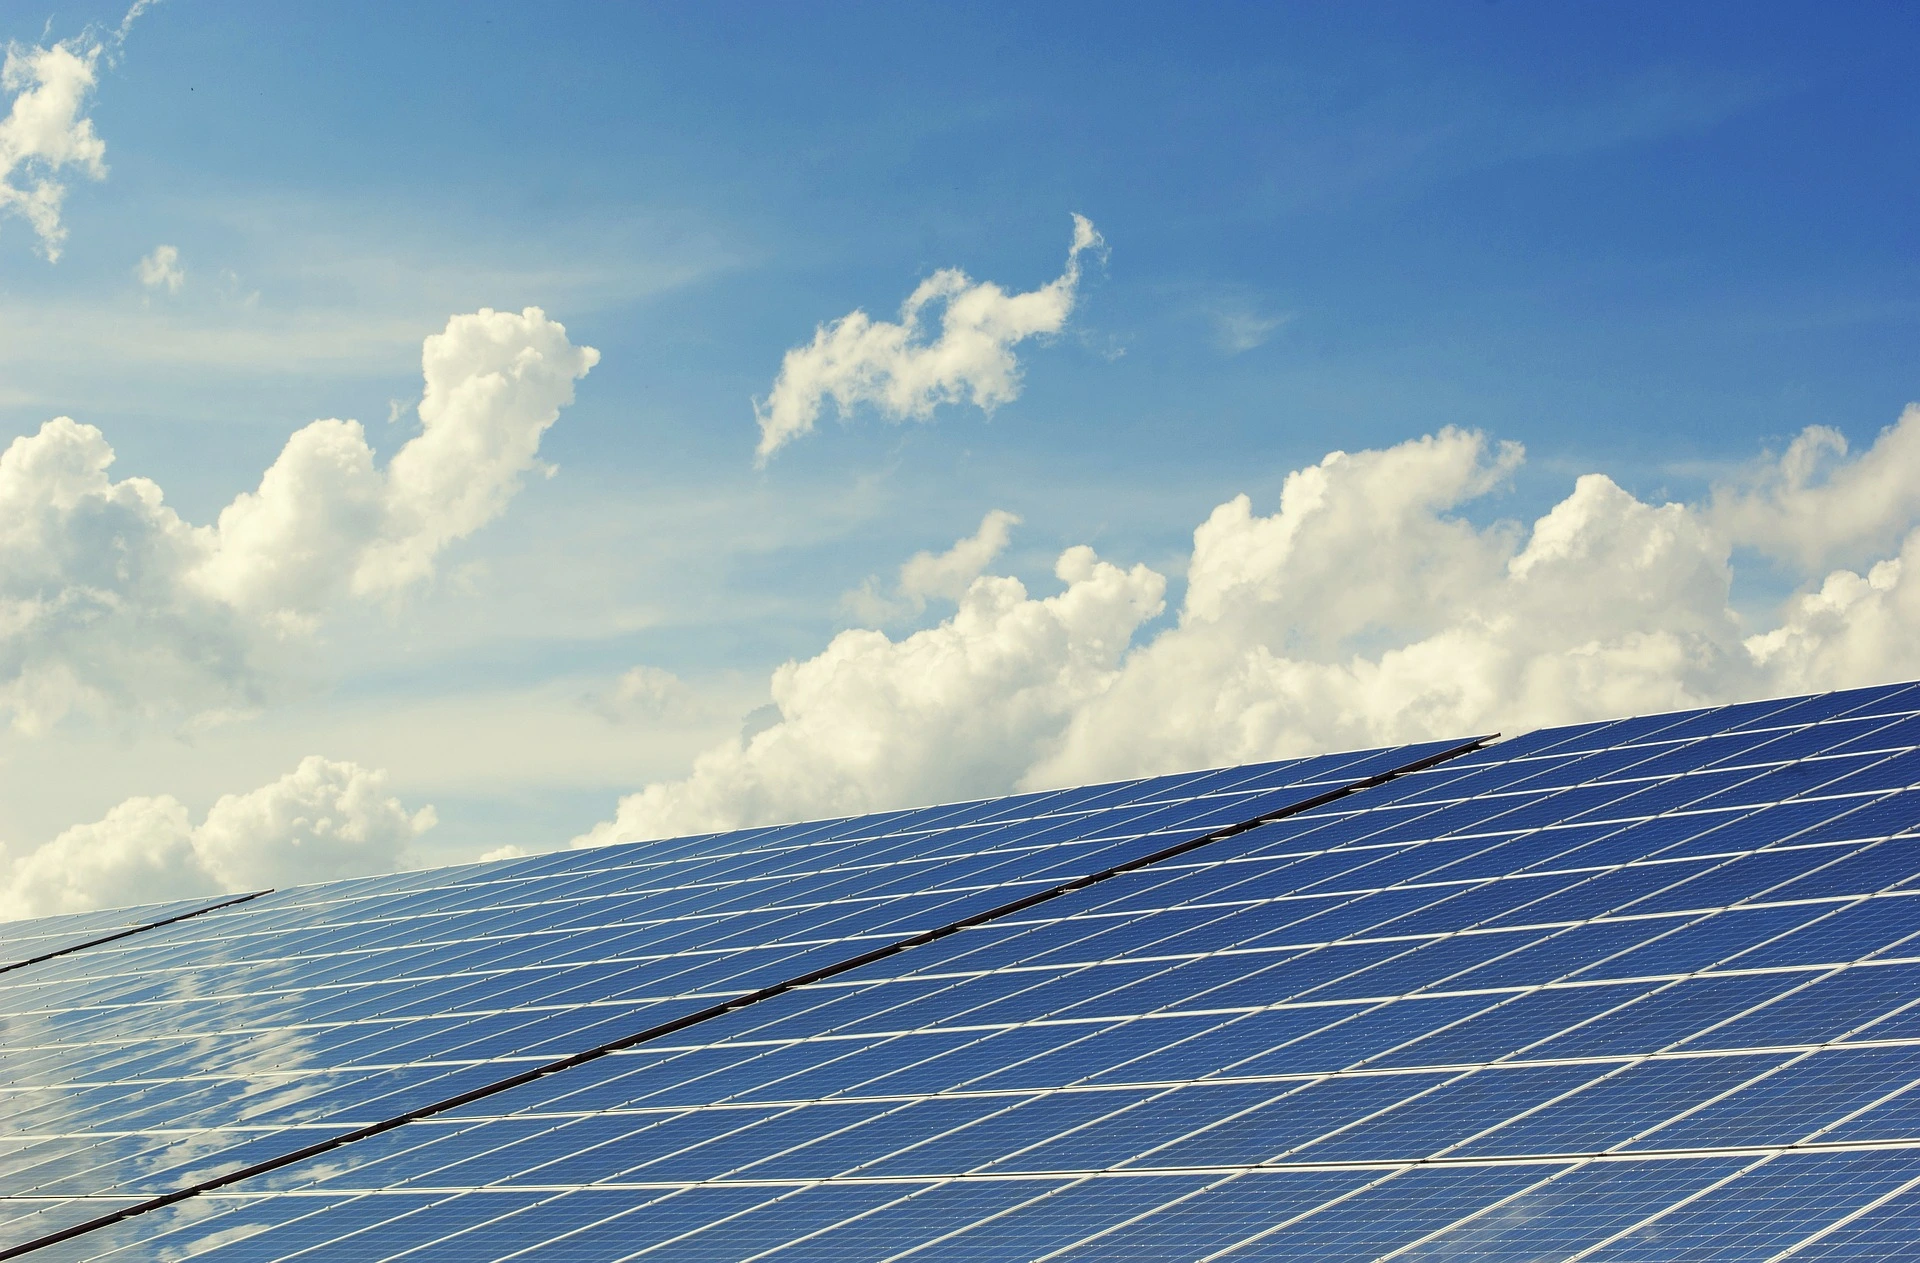 A MET Csoport olasz leányvállalata hosszútávú szerződés keretében értékesíti egy szicíliai naperőmű megújuló energiáját